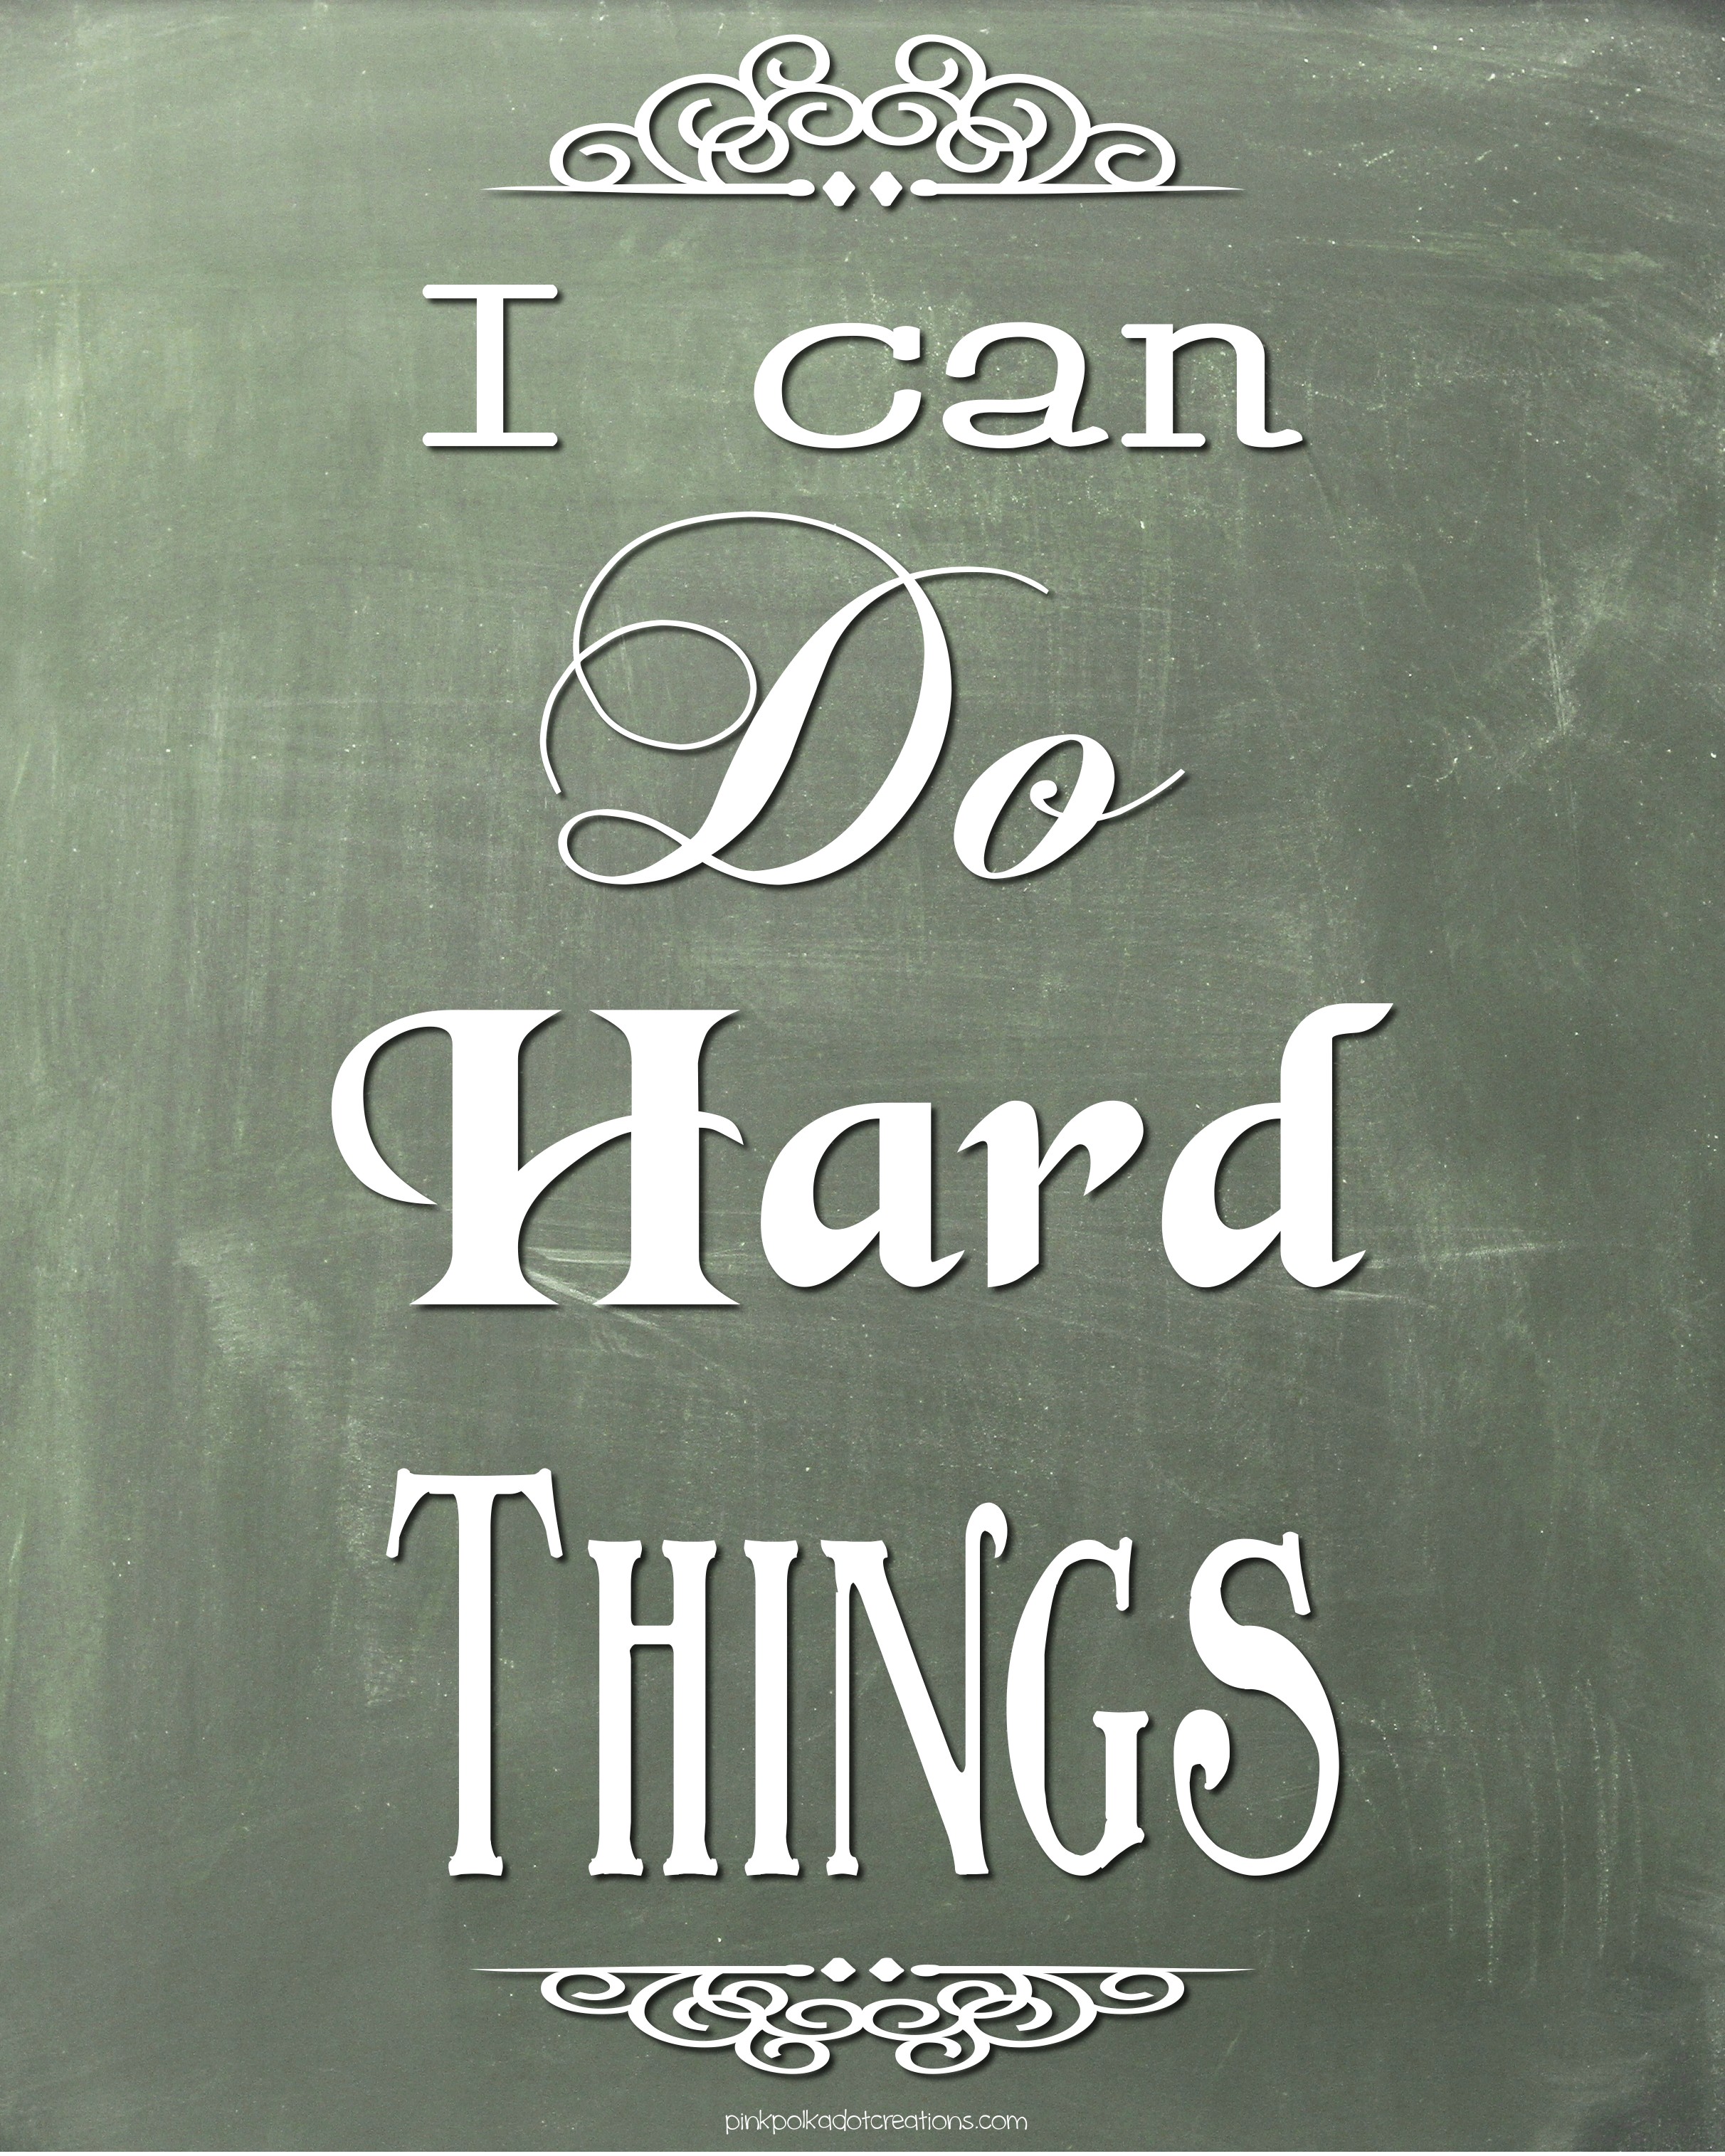 Hard things. Do hard things. Hard things hard thing. Hard things about hard things